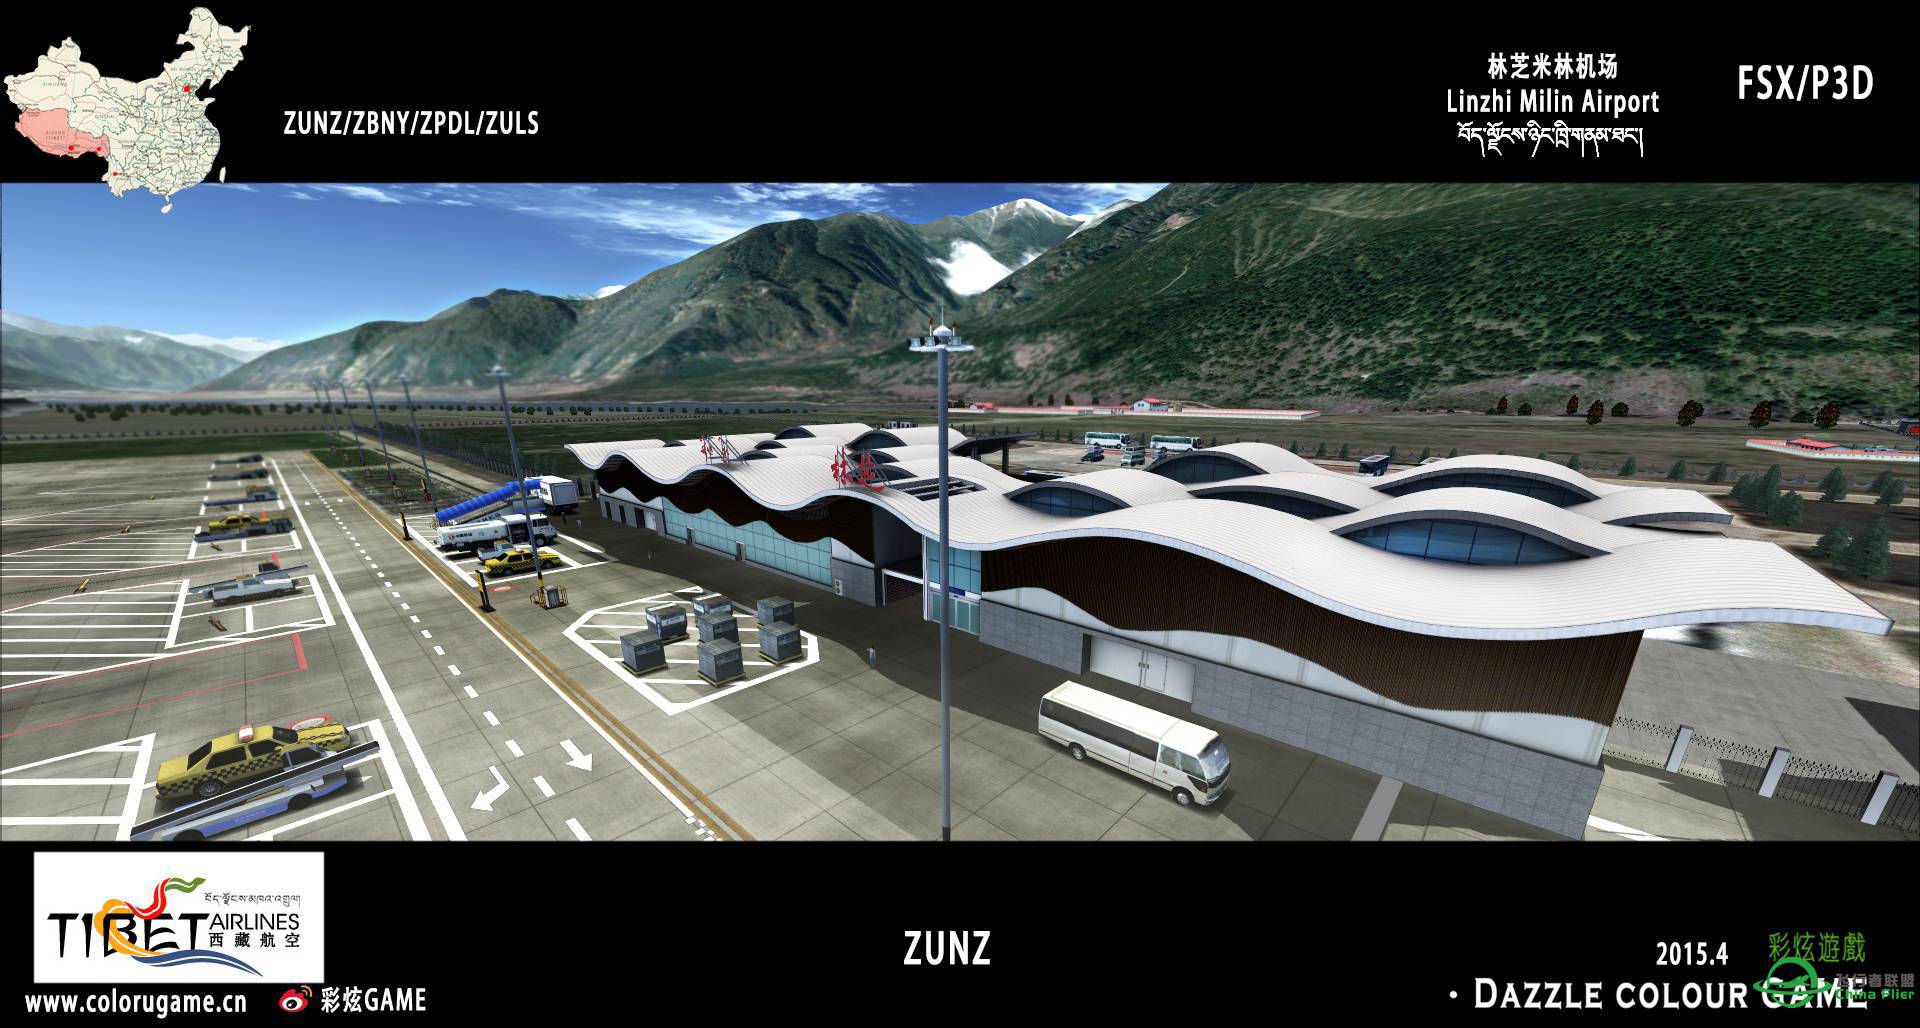 彩炫地景：林芝米林机场（ZUNZ）正式发布！-7781 